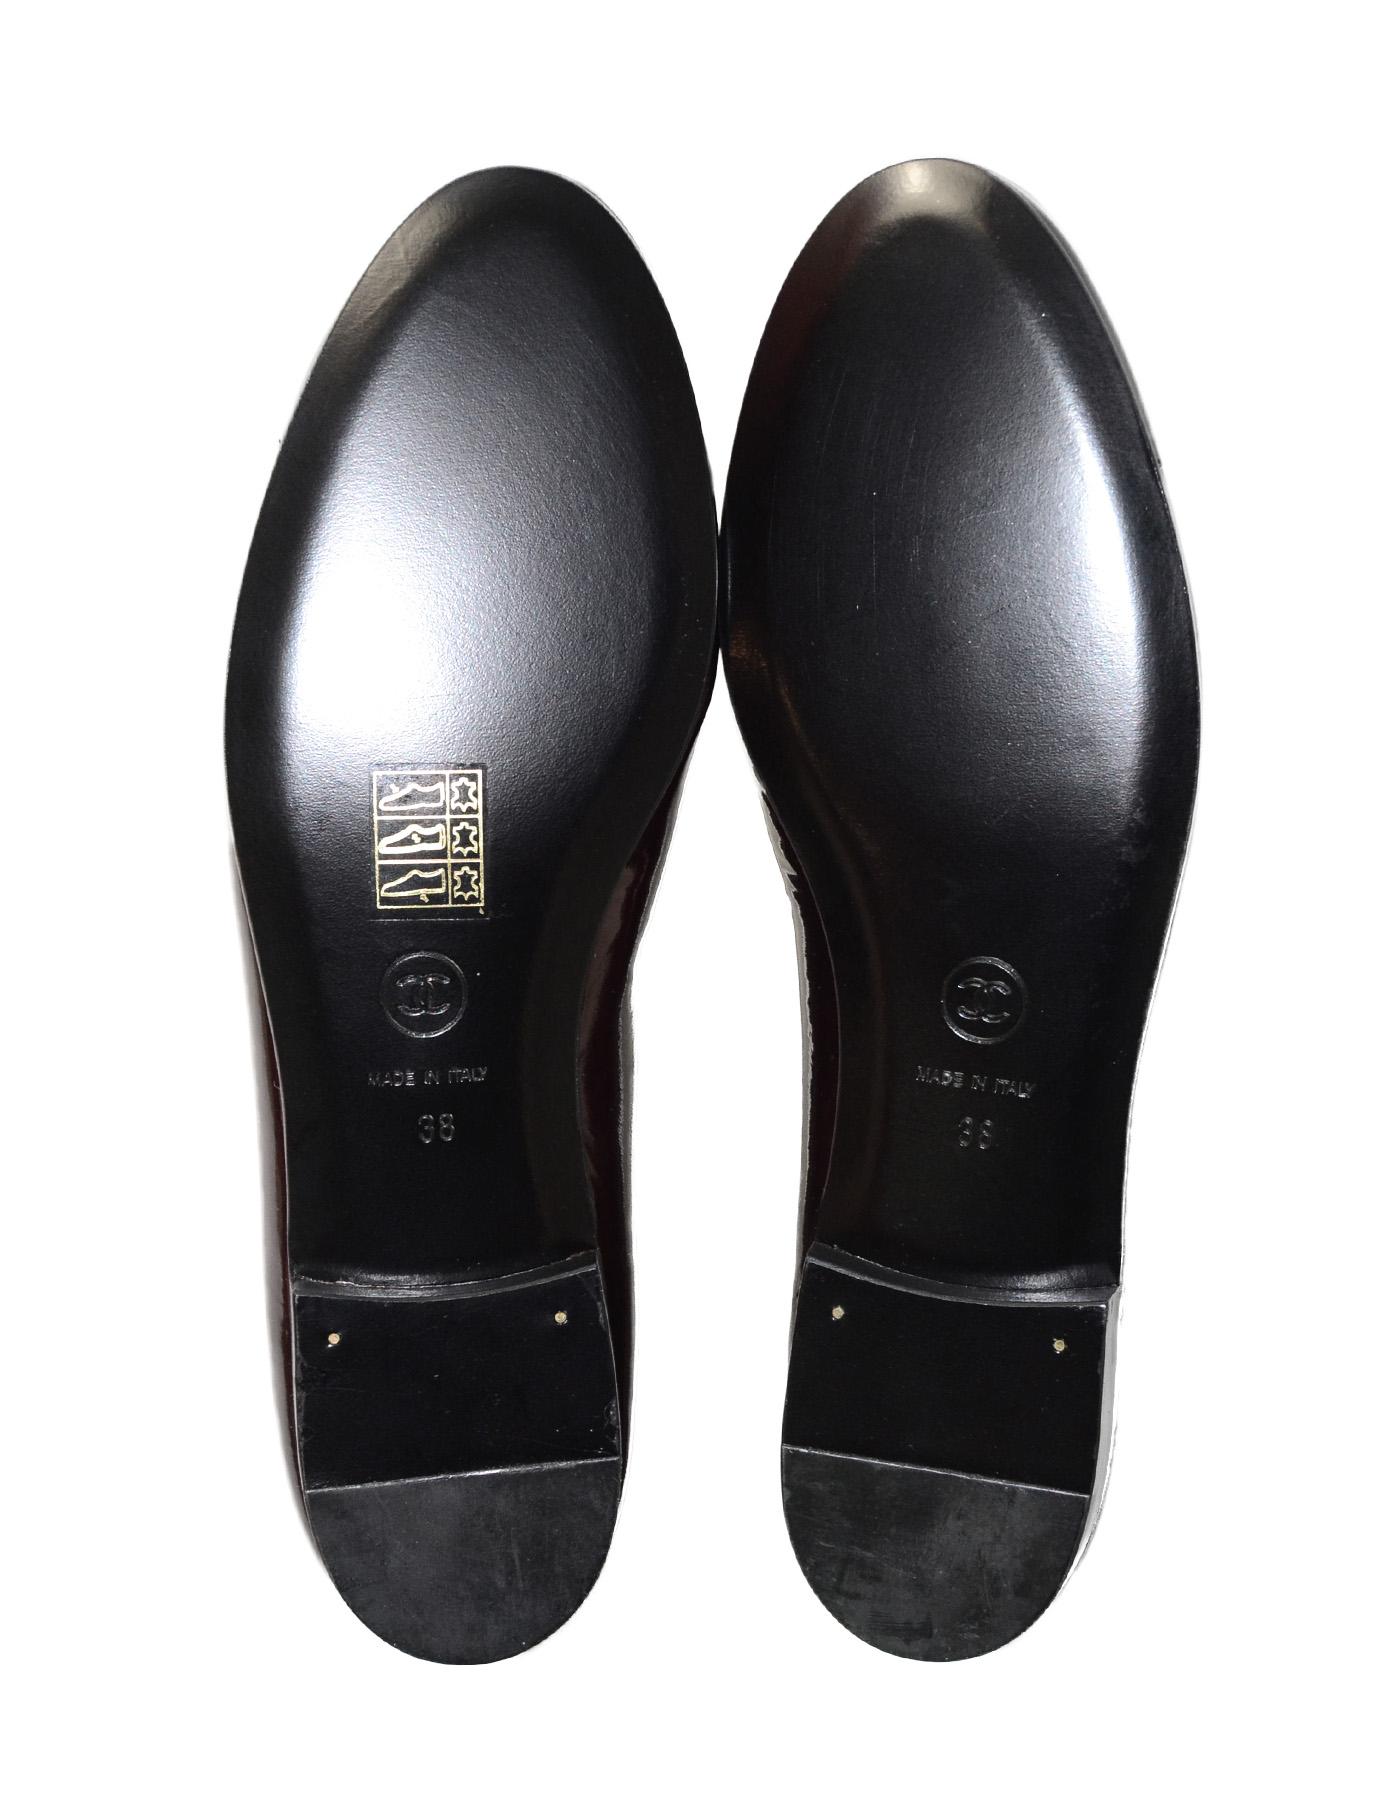 Chanel New Bordeaux/Black Patent Leather Cap Toe CC Ballet Flats Sz 38 2